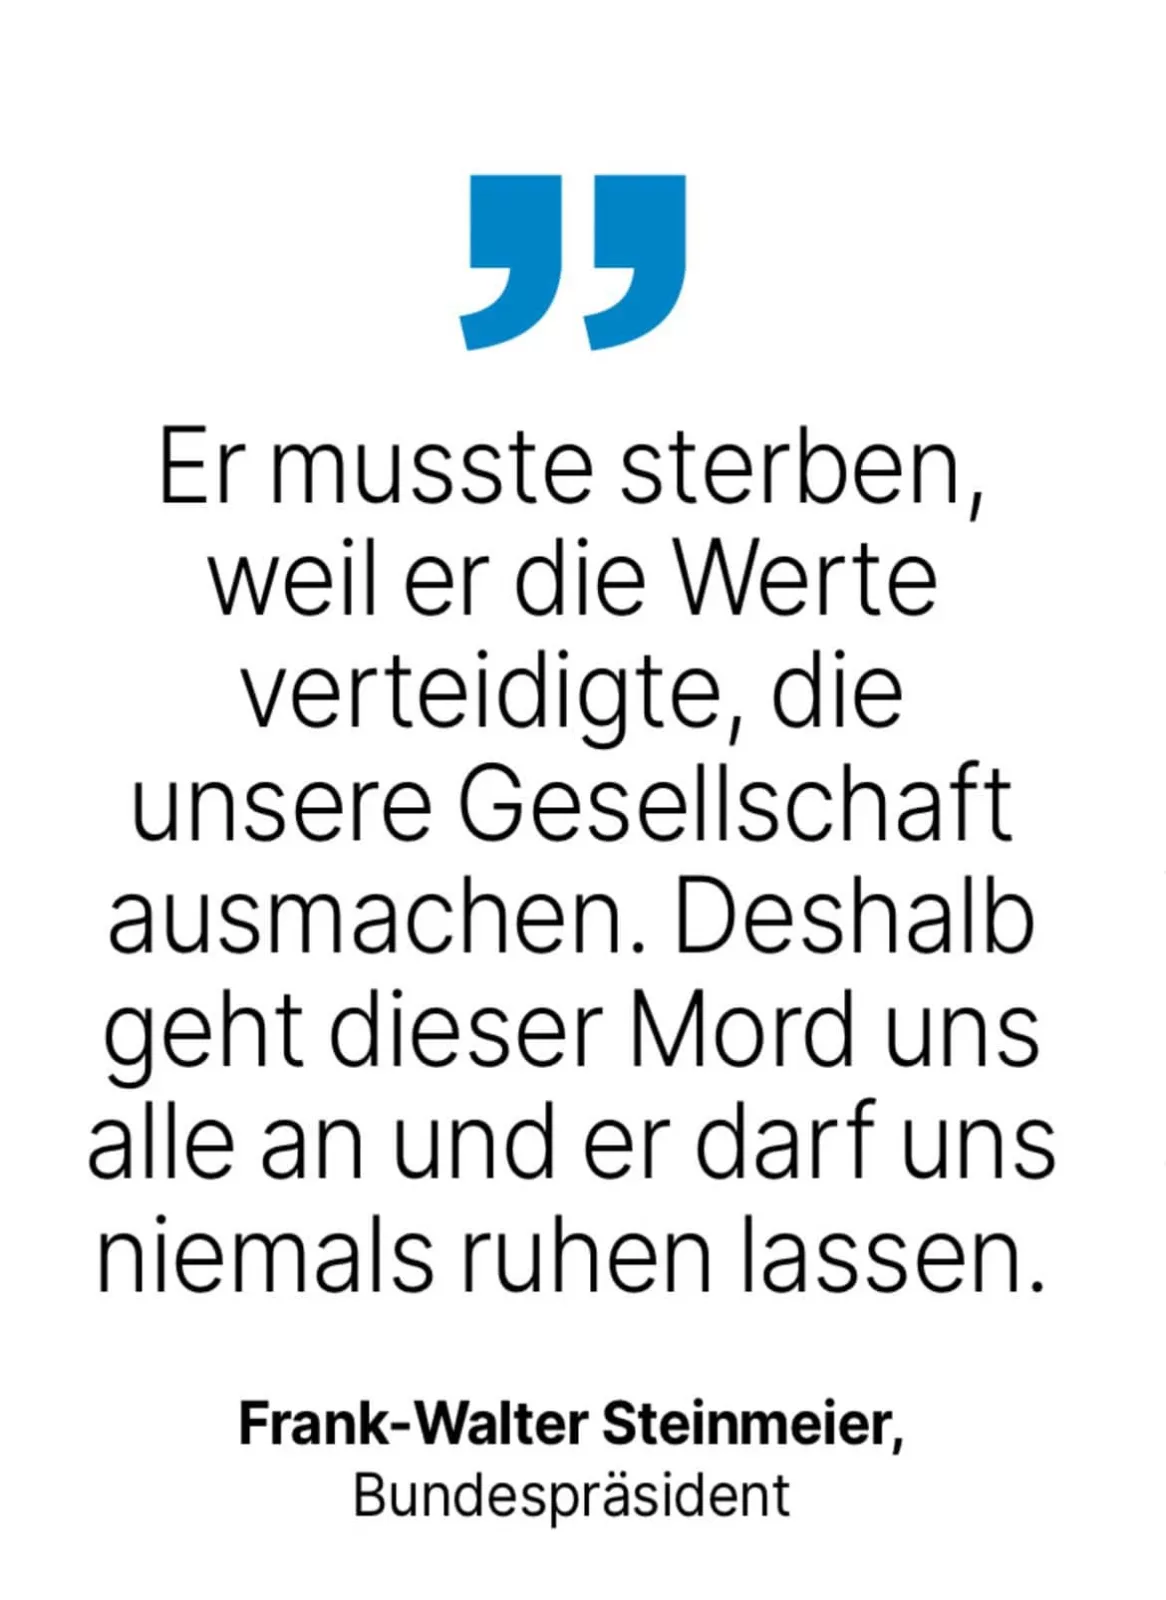 Frank-Walter Steinmeier, Bundespräsident: Er musste sterben, weil er die Werte verteidigte, die unsere Gesellschaft ausmachen. Deshalb geht dieser Mord uns alle an und er darf uns niemals ruhen lassen.